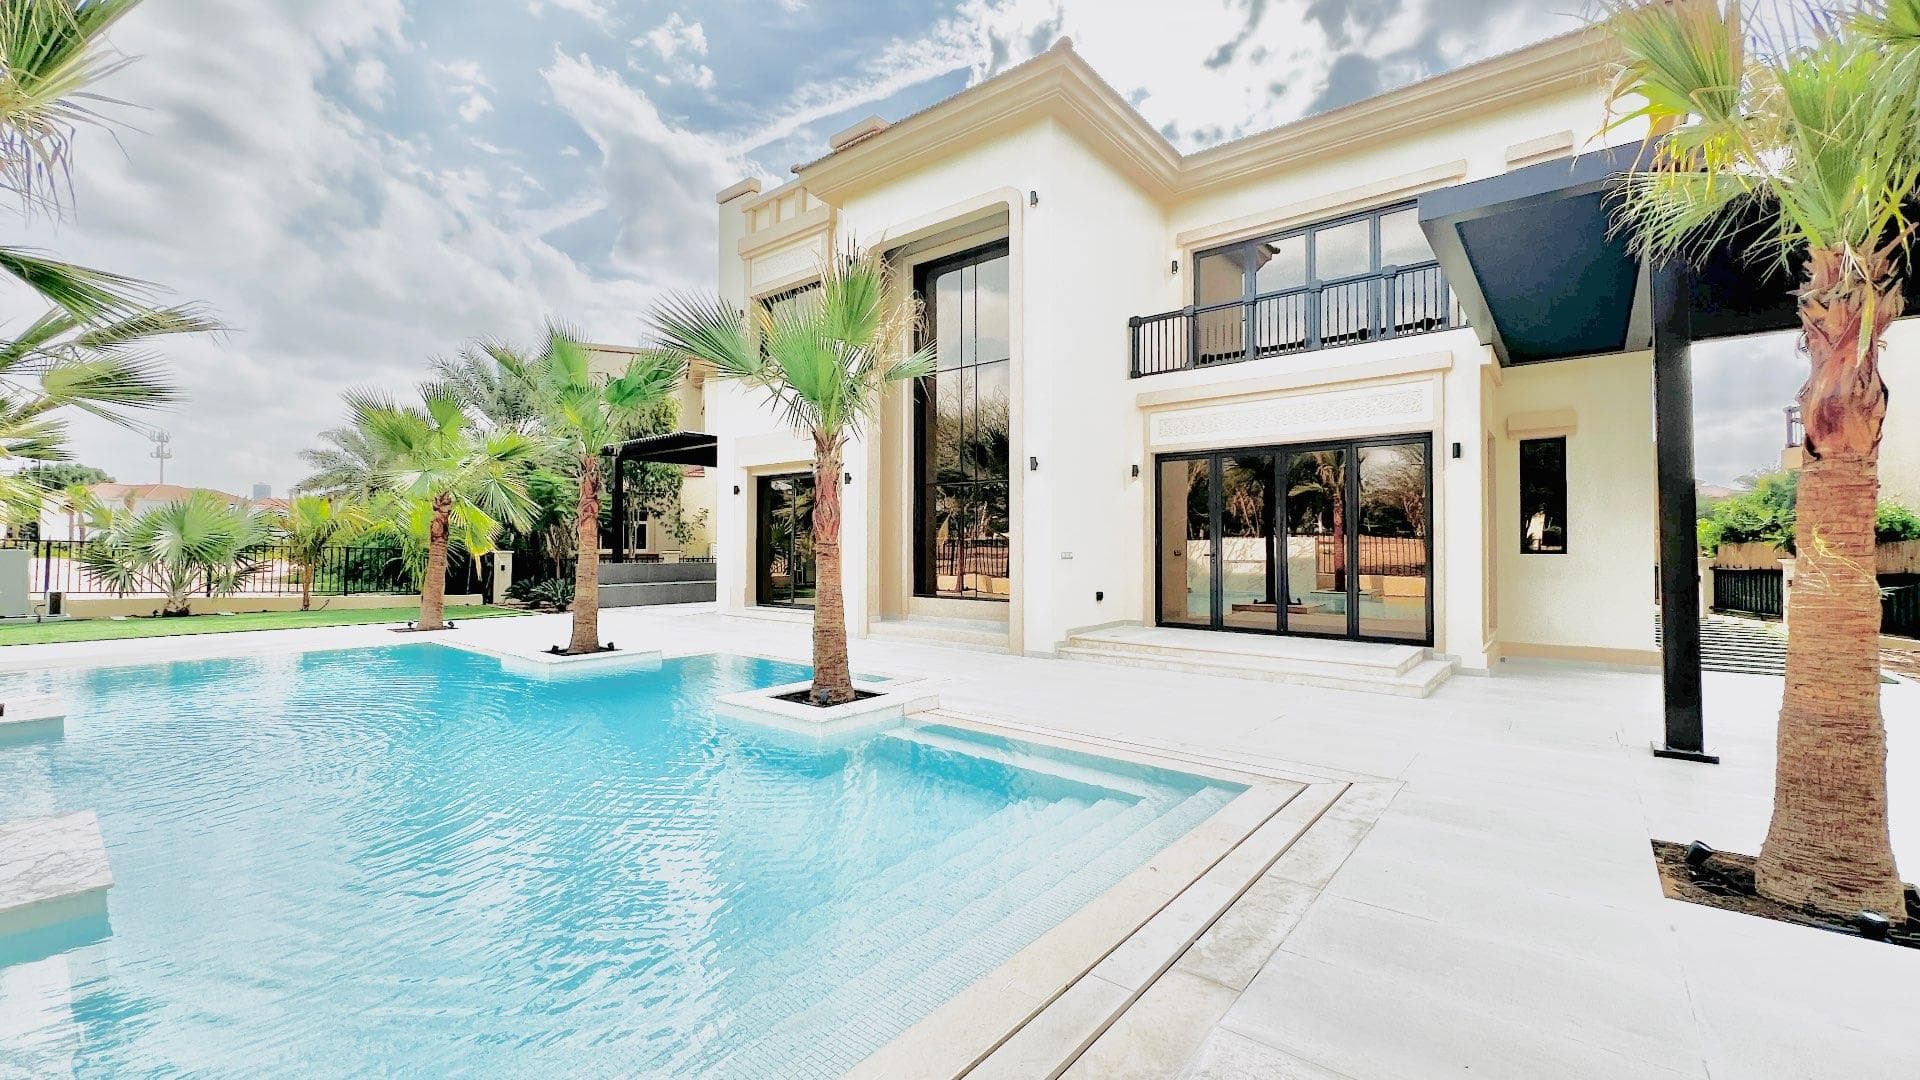 4 Bedroom Villa For Rent Mediterranean Clusters Lp17201 4cdf6a3c18e4480.jpg